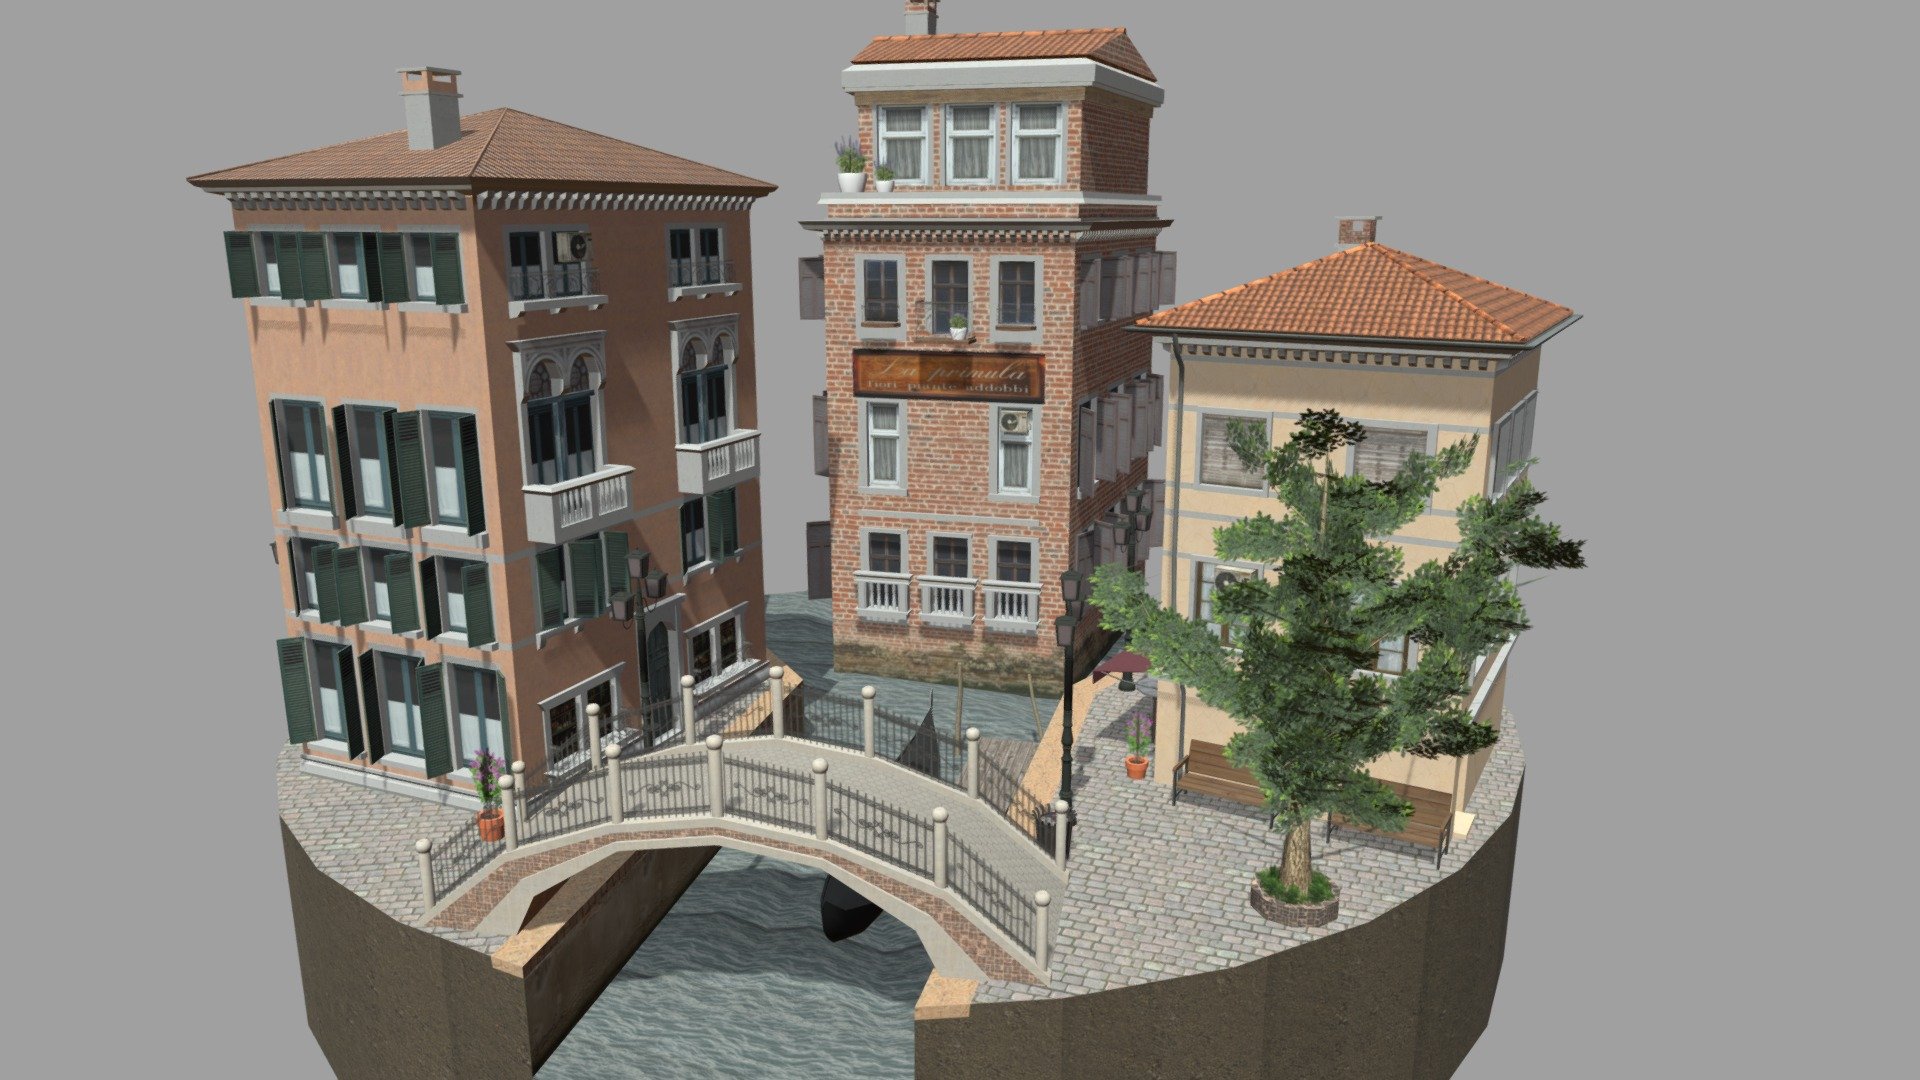 1DAE07-EVFX Floortje Verstegen
  3D Low Poly  2019-2020 - City Scene Venice - 3D model by FloortjeVerstegen (@floor.verstegen) 3d model